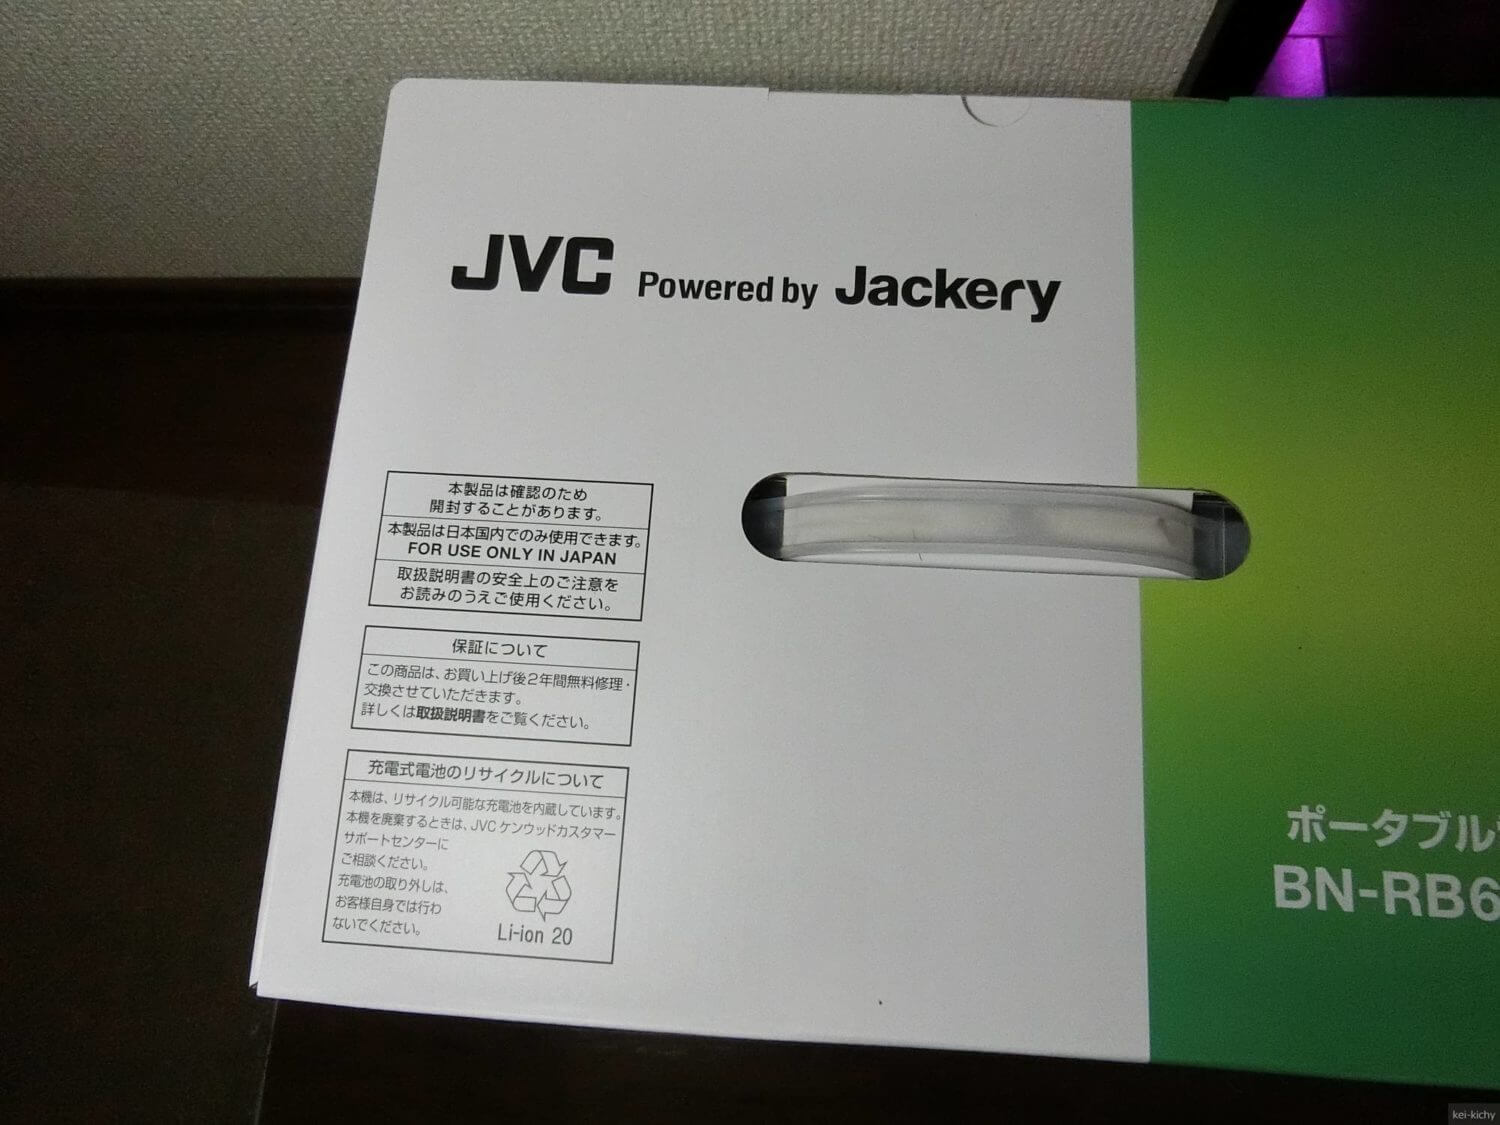 【災害用に】JVCケンウッド ポータブル電源BN-RB62-Cを購入